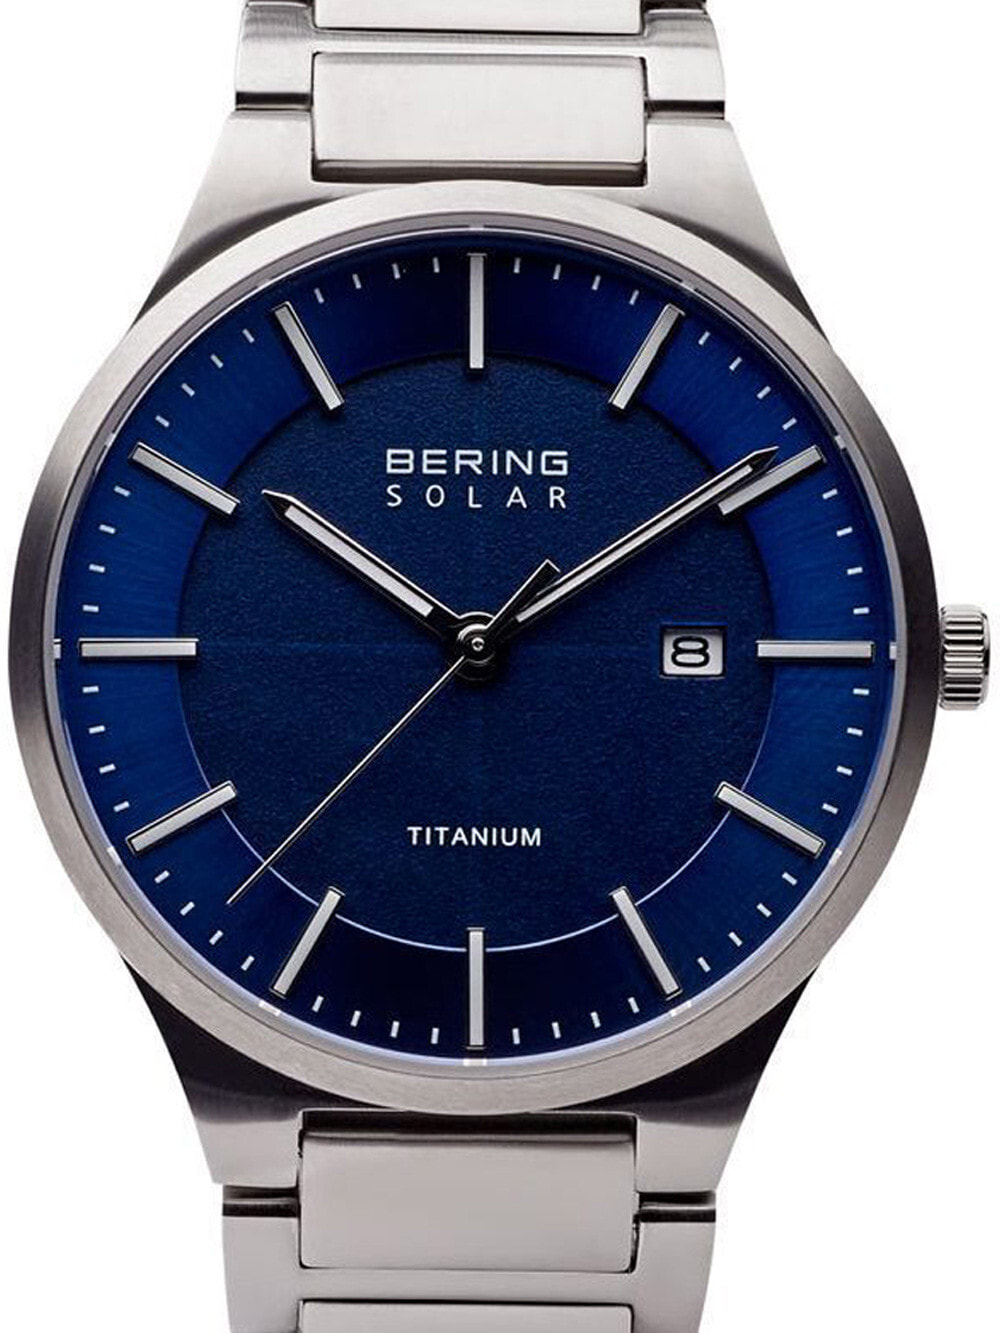 Мужские наручные часы с серебряным браслетом Bering 15239-777 solar mens 39mm 10ATM